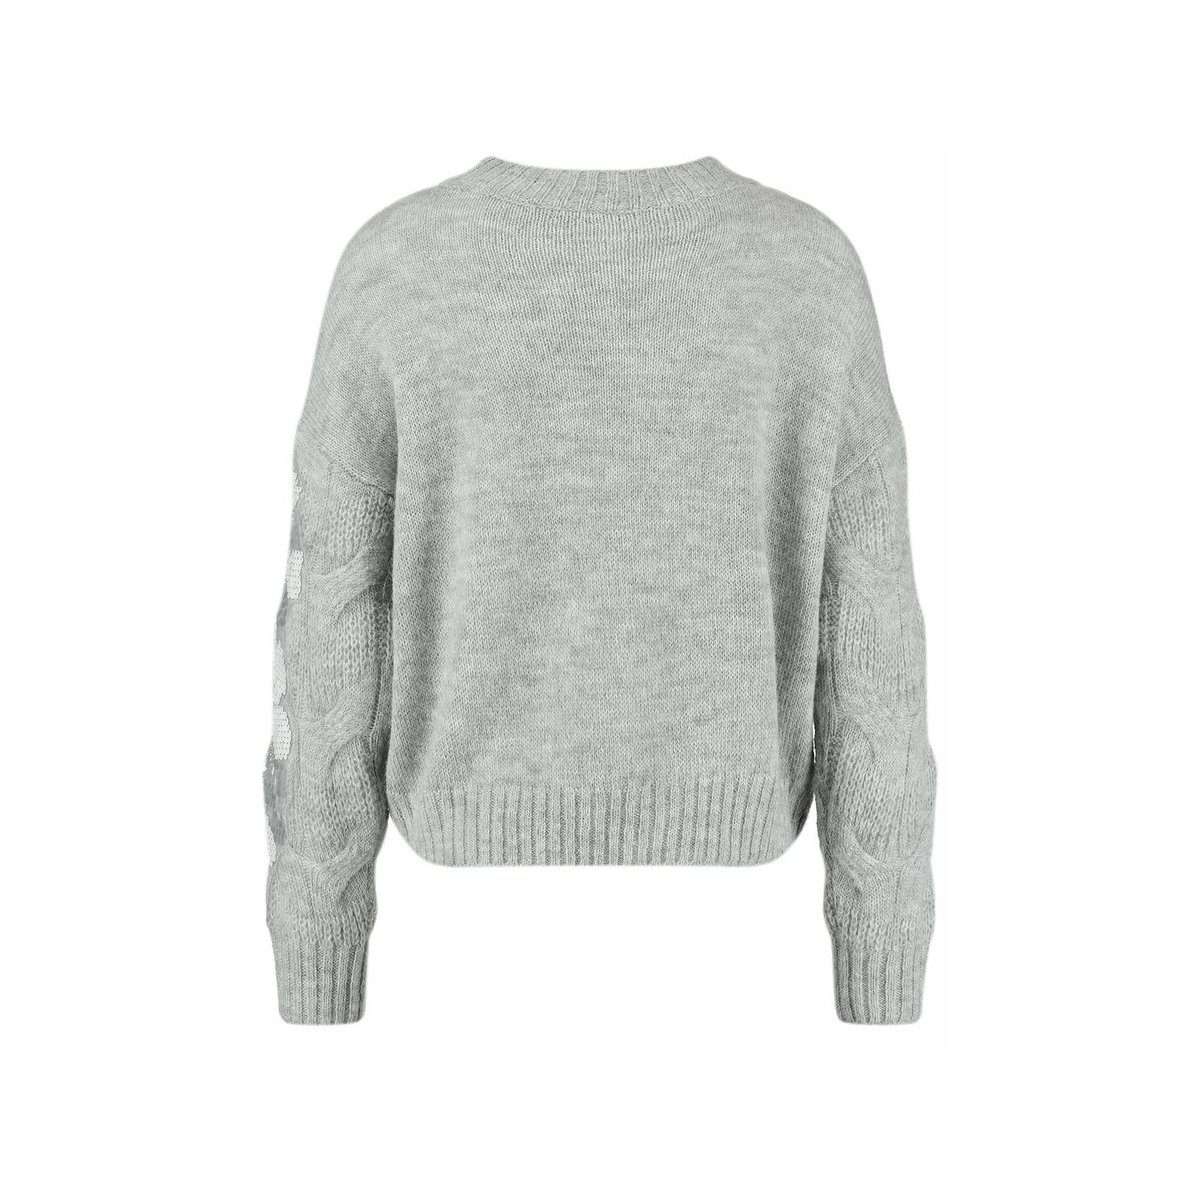 Свитер-пуловер с круглым вырезом, украшенный пайетками